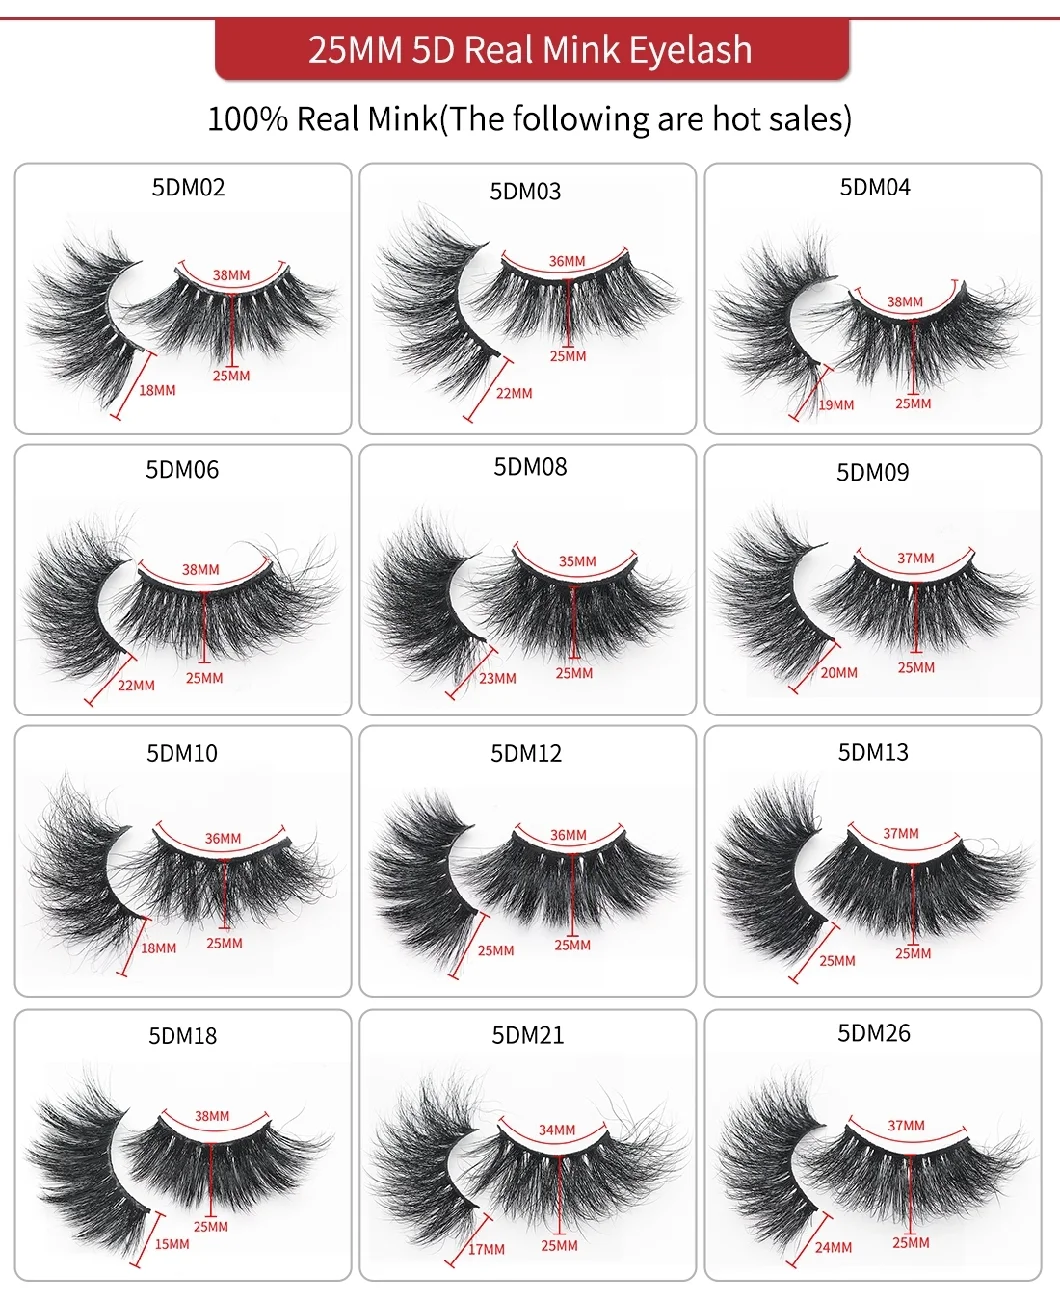 Hot Sale Shaped Eyelash Extensions Weaving Effect Synthetic Mink False Eyelashes